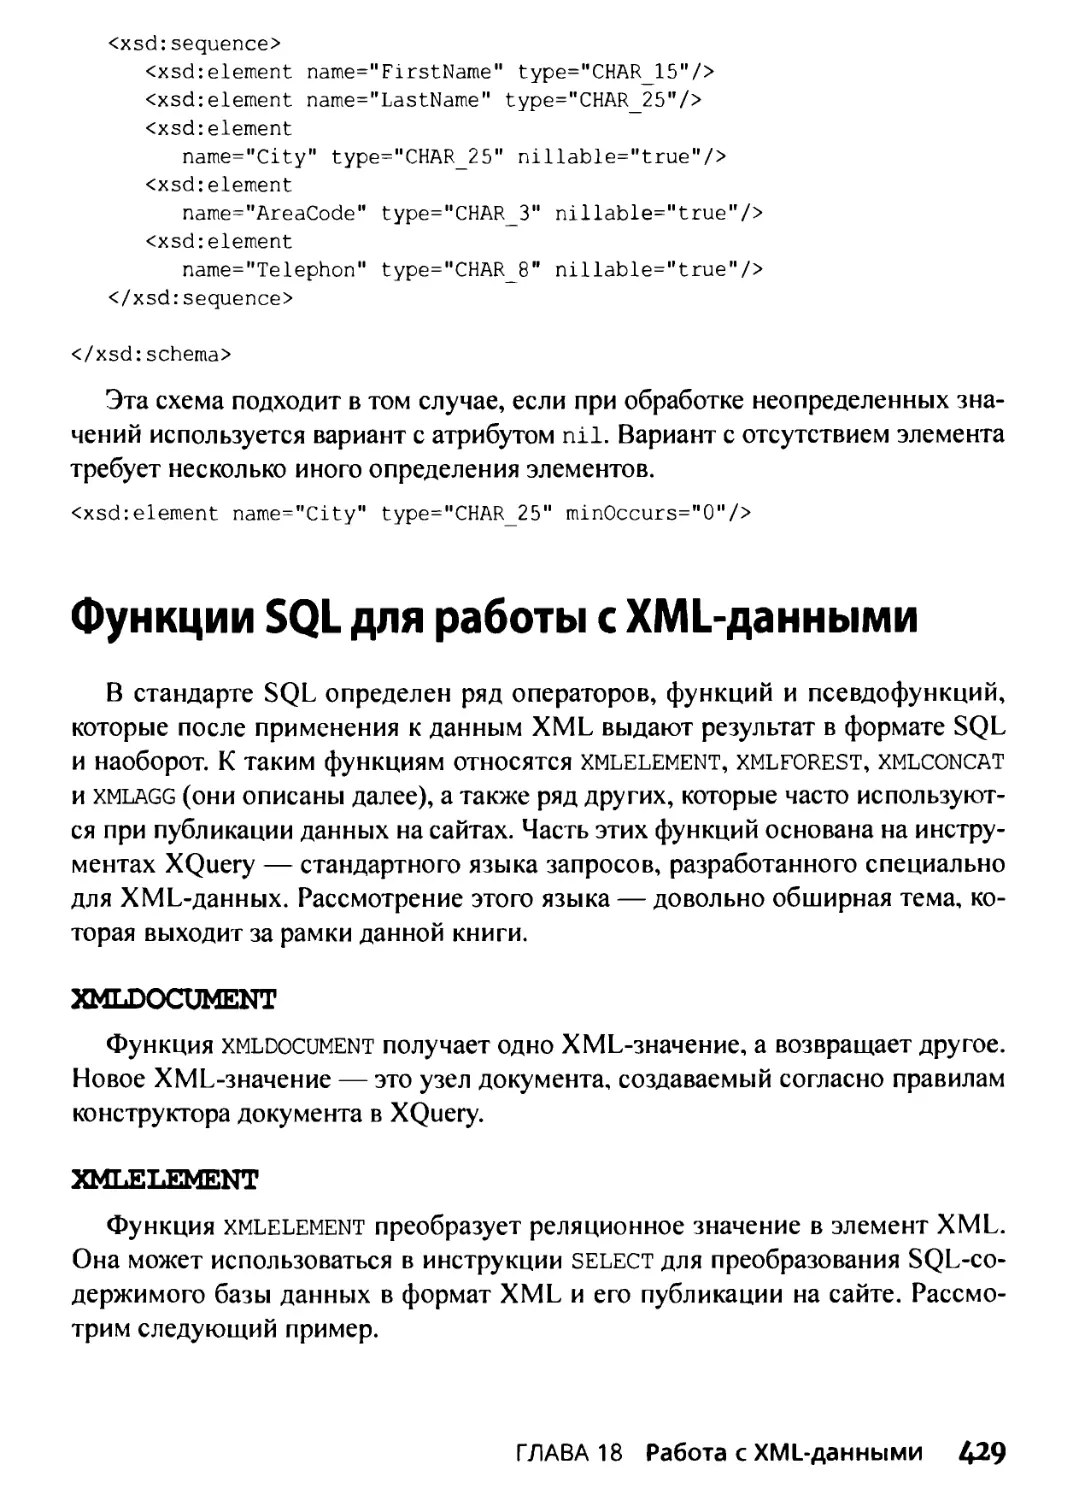 Функции SQL для работы с XML-данными
XMLELEMENT